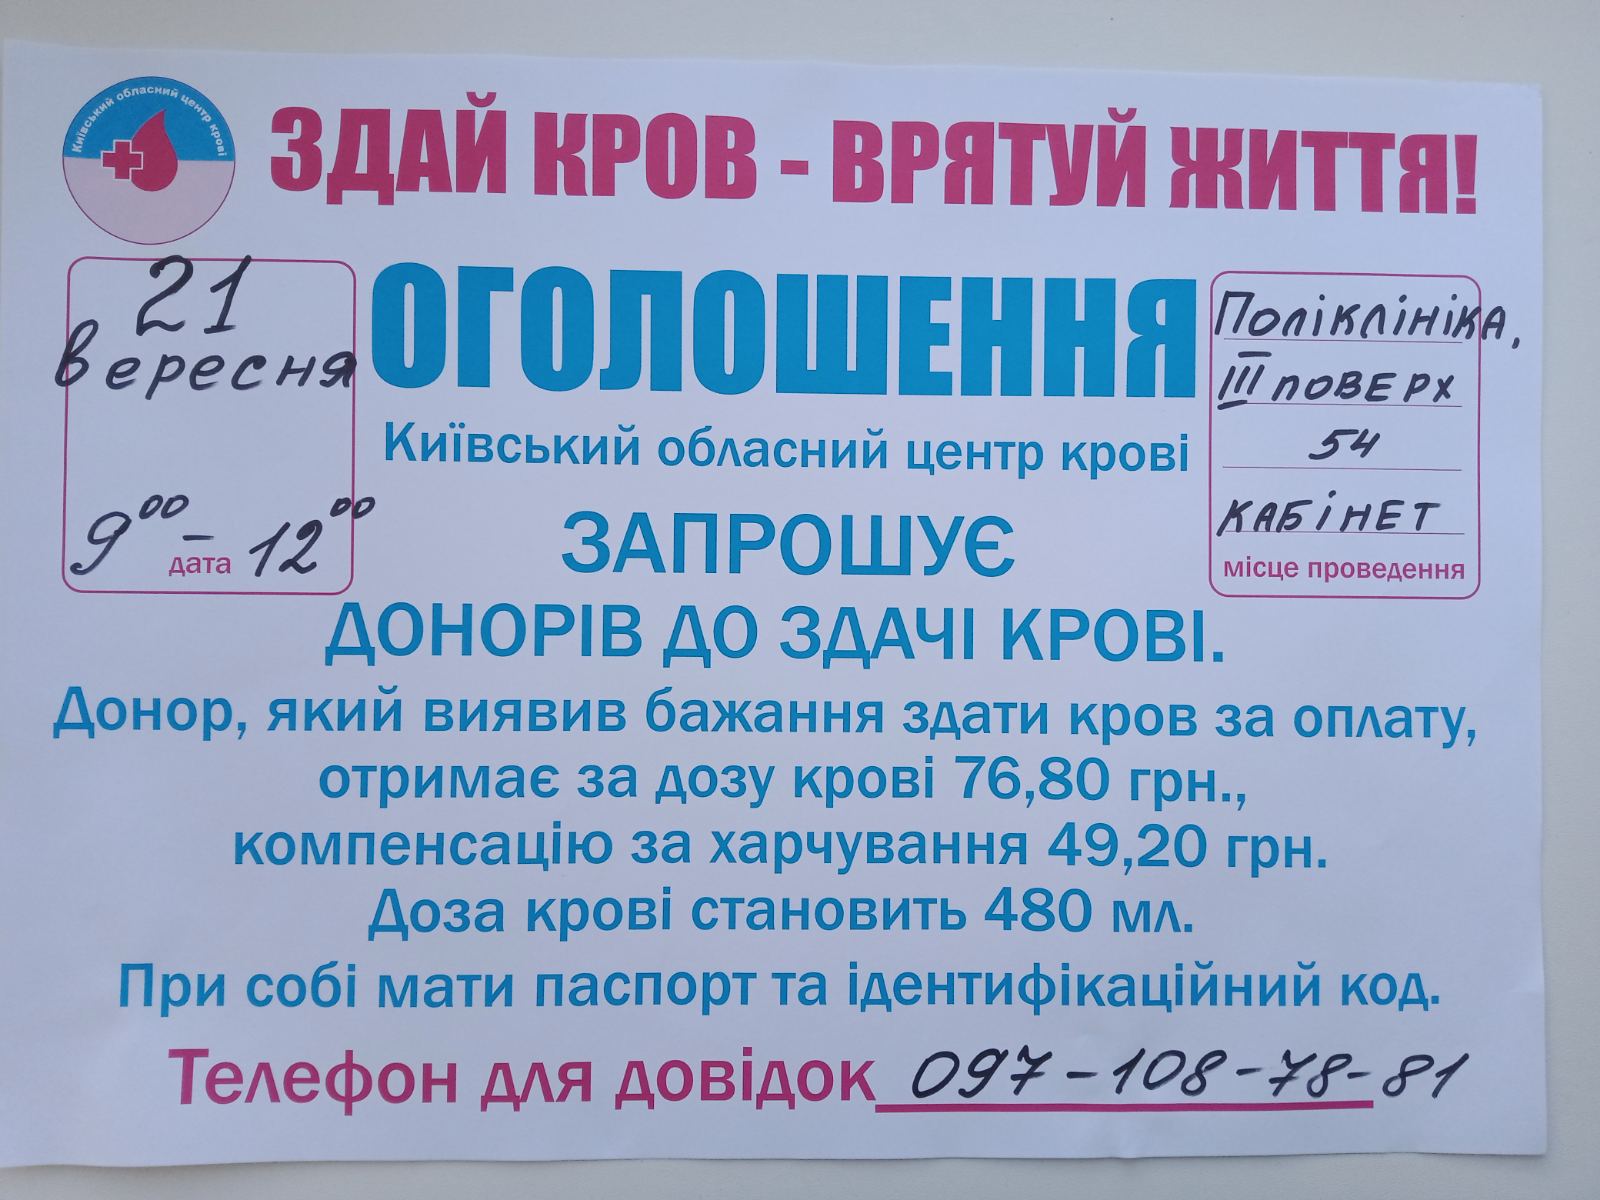 Київський обласний центр крові запрошує донорів до здачі крові